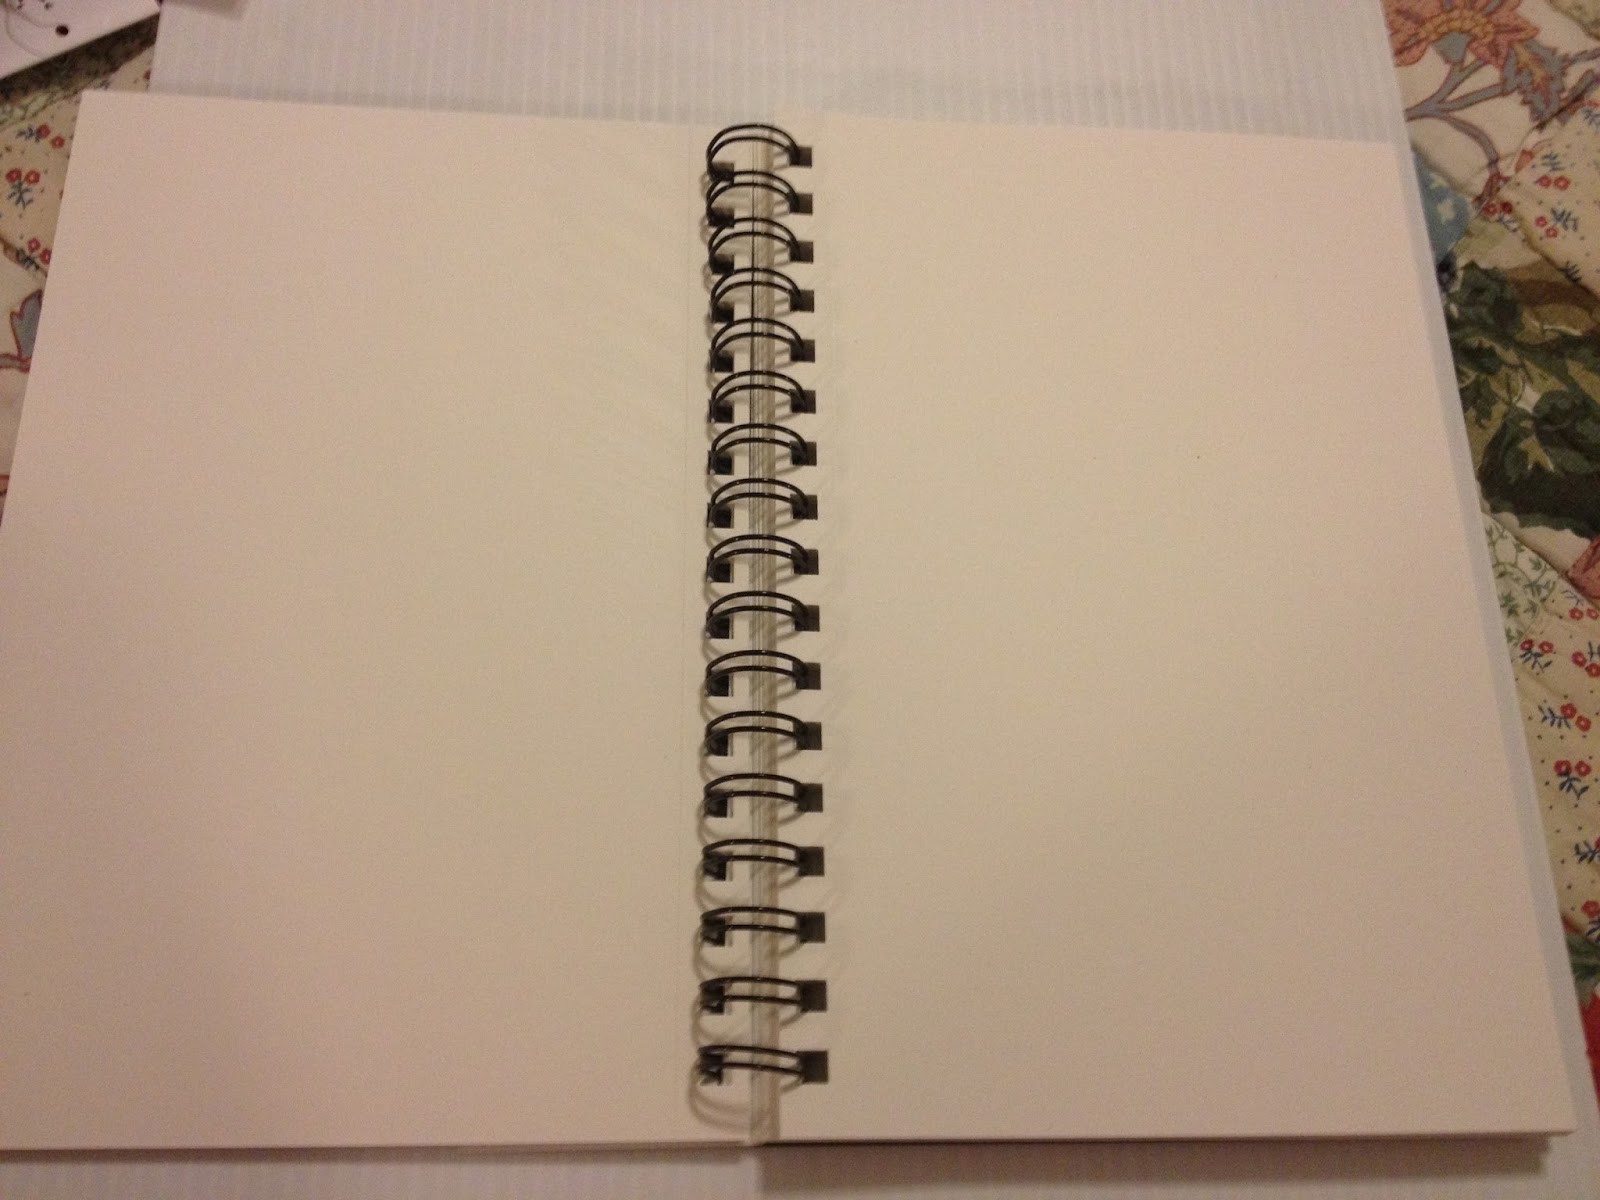 3 Ea) Wirebound Sketchbook 9x12